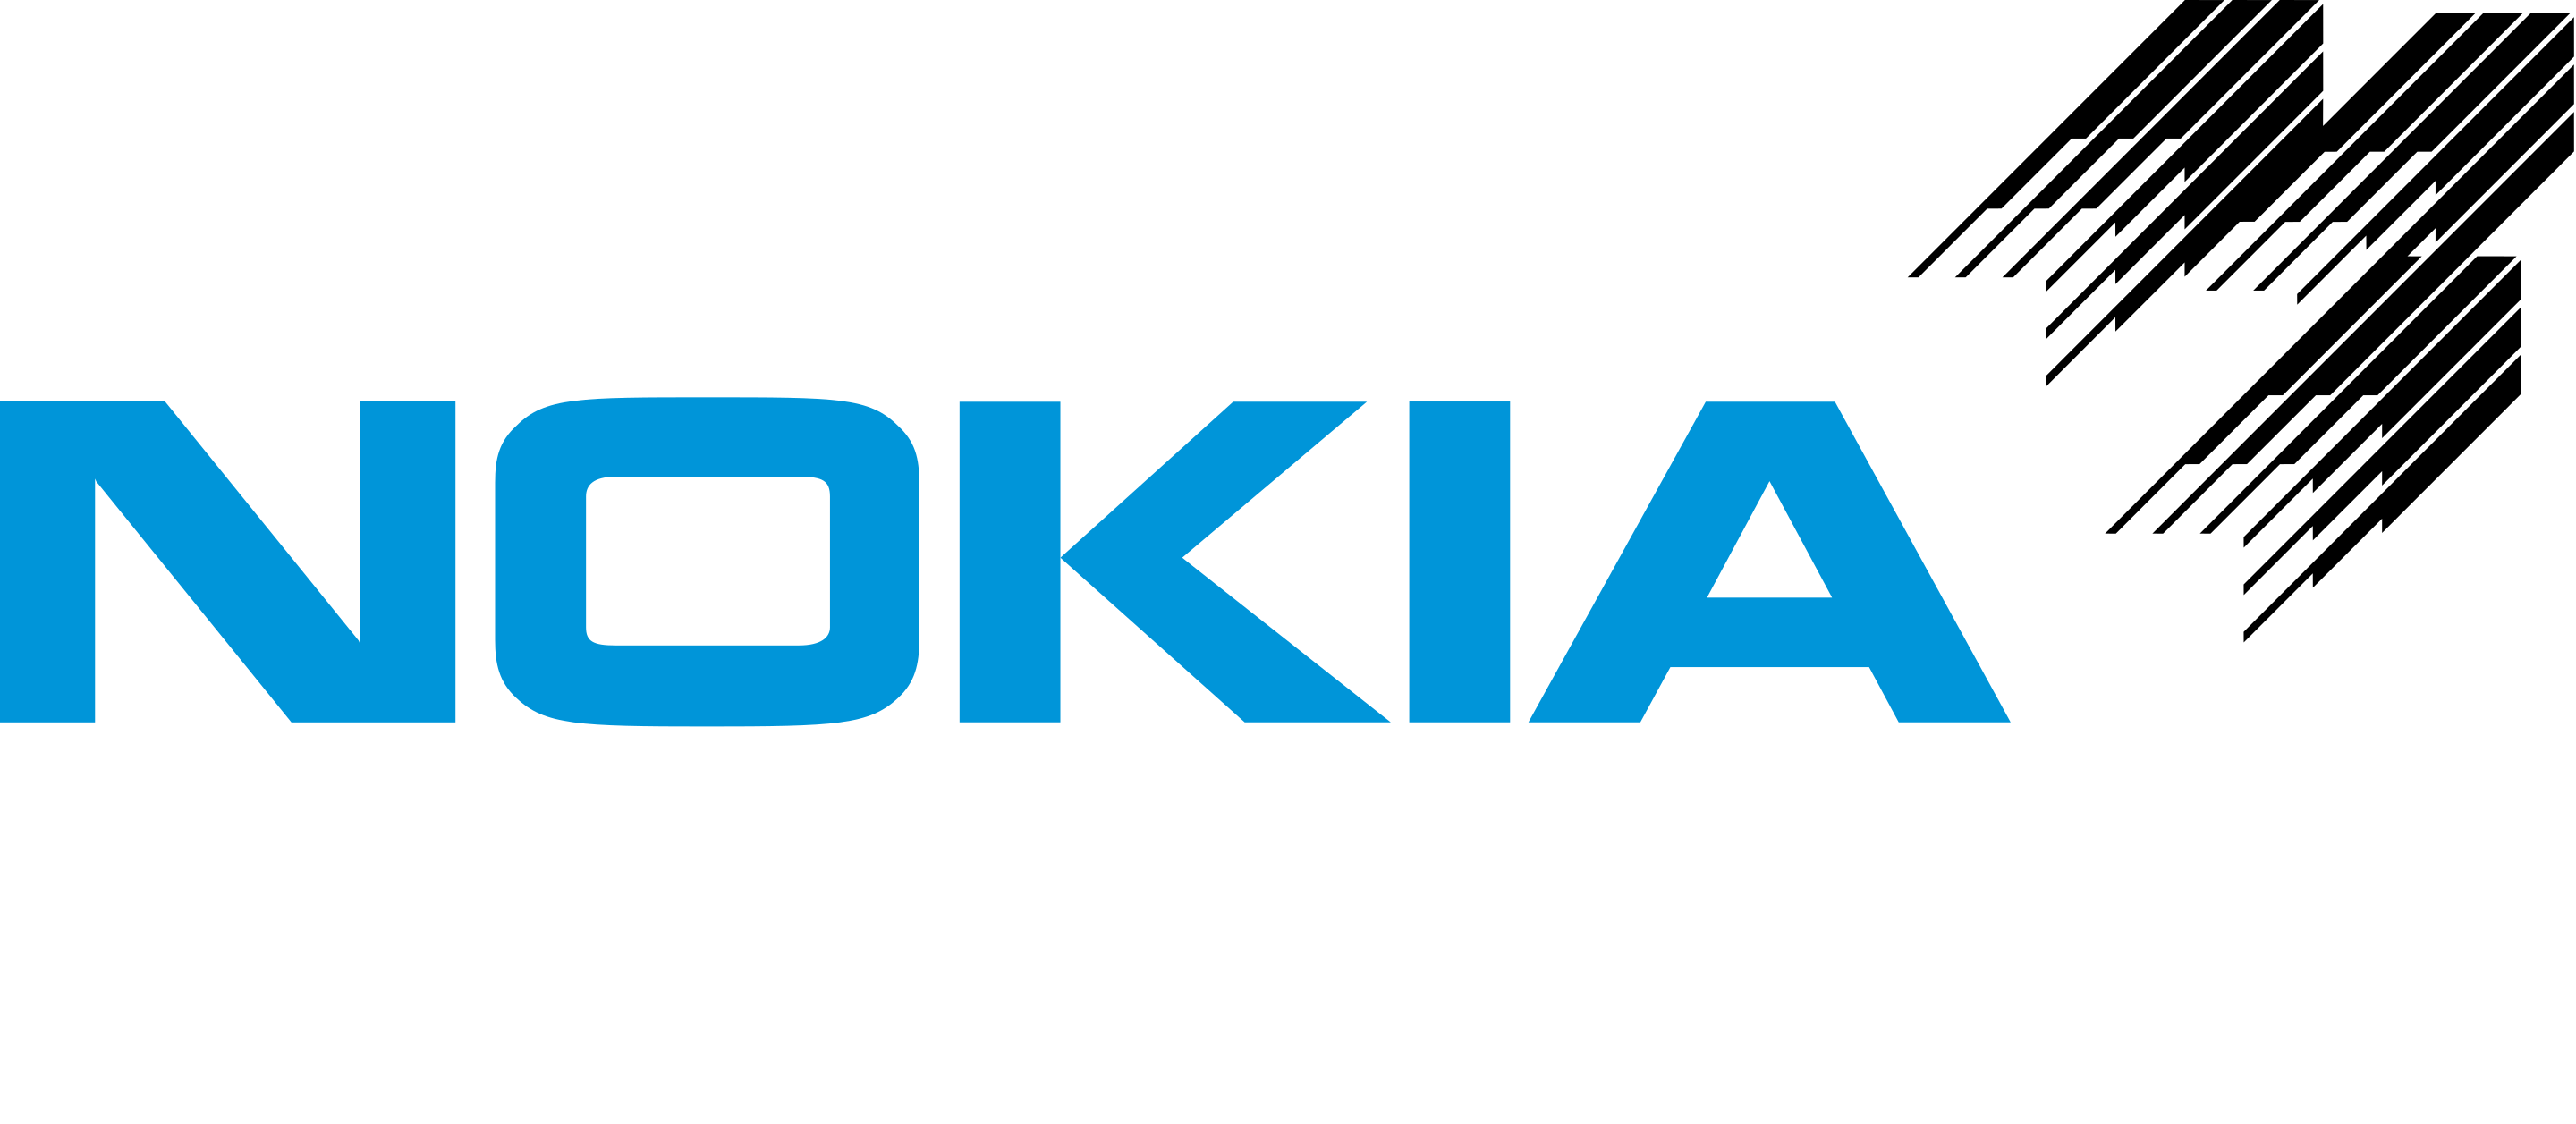 Nokia logo 1966